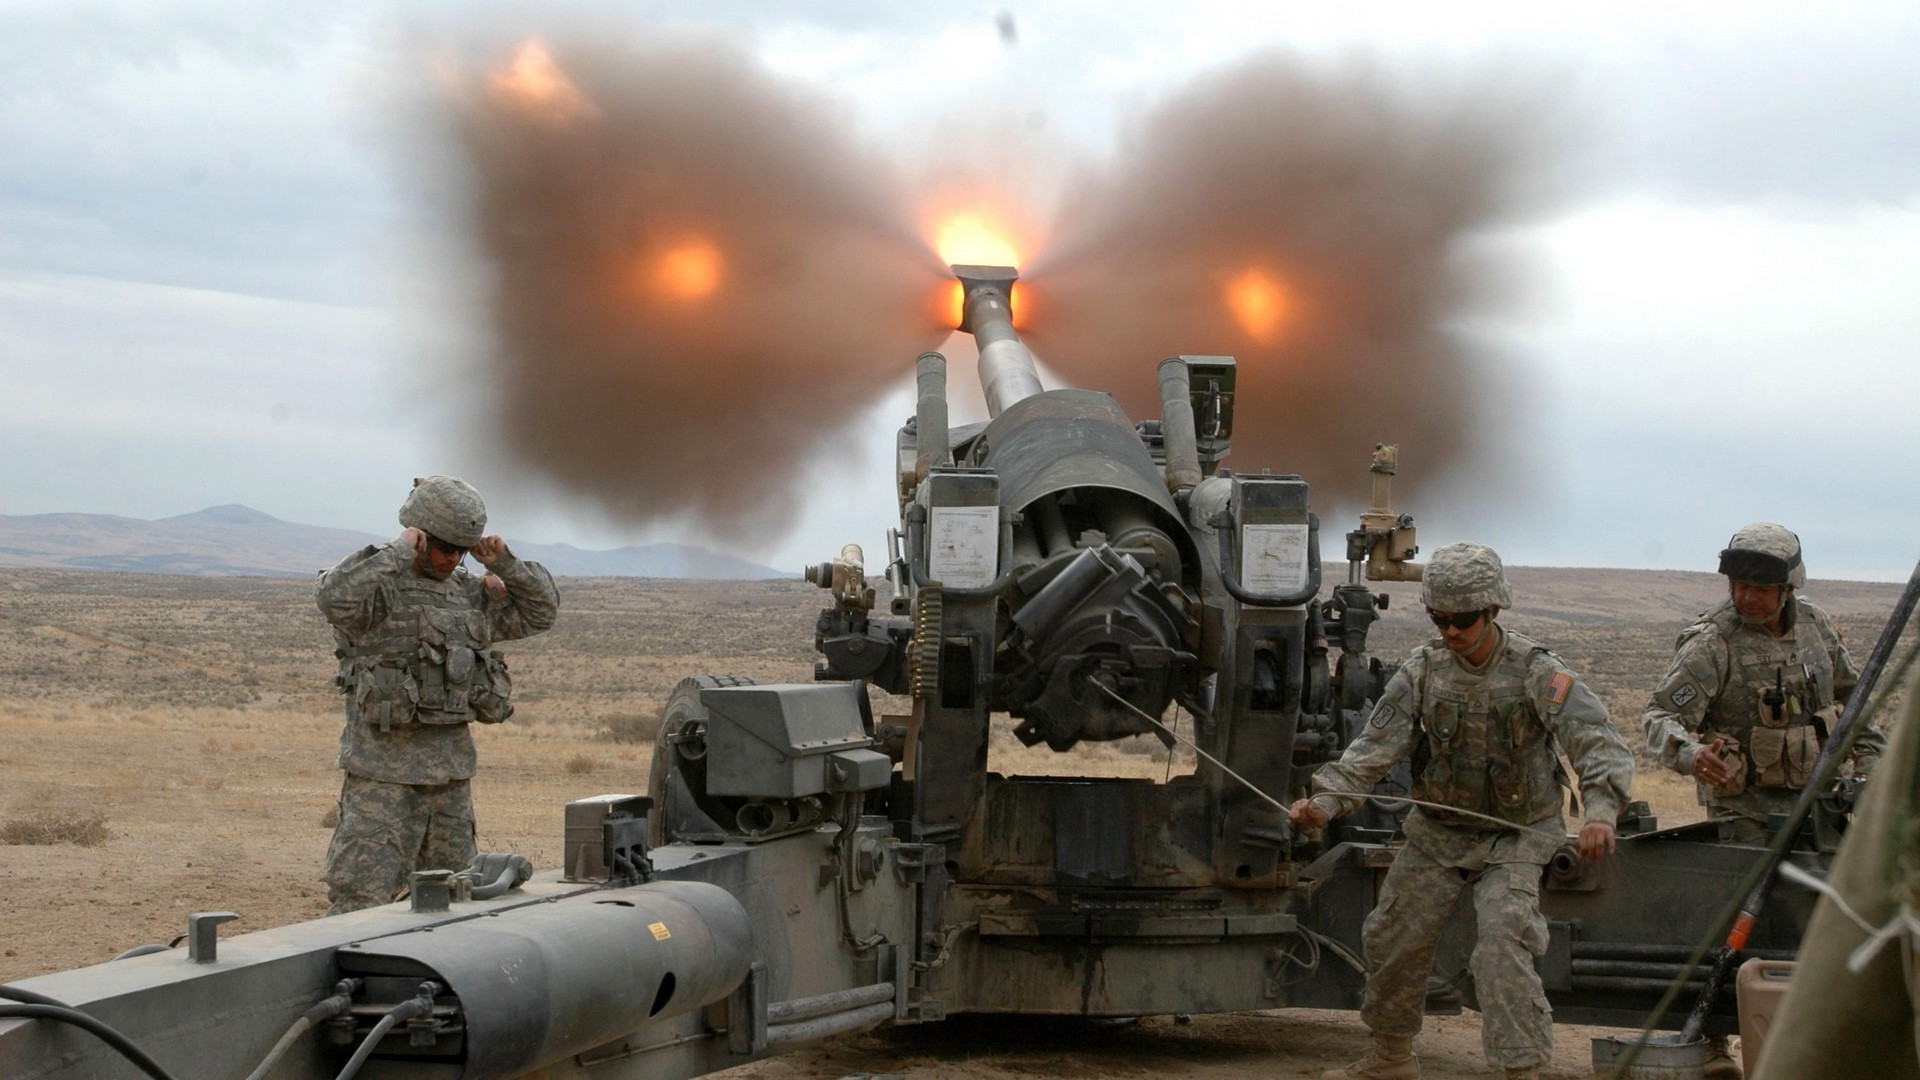 M198 Howitzer, Howitzer, Artillery Wallpapers HD / Desktop and Mobile